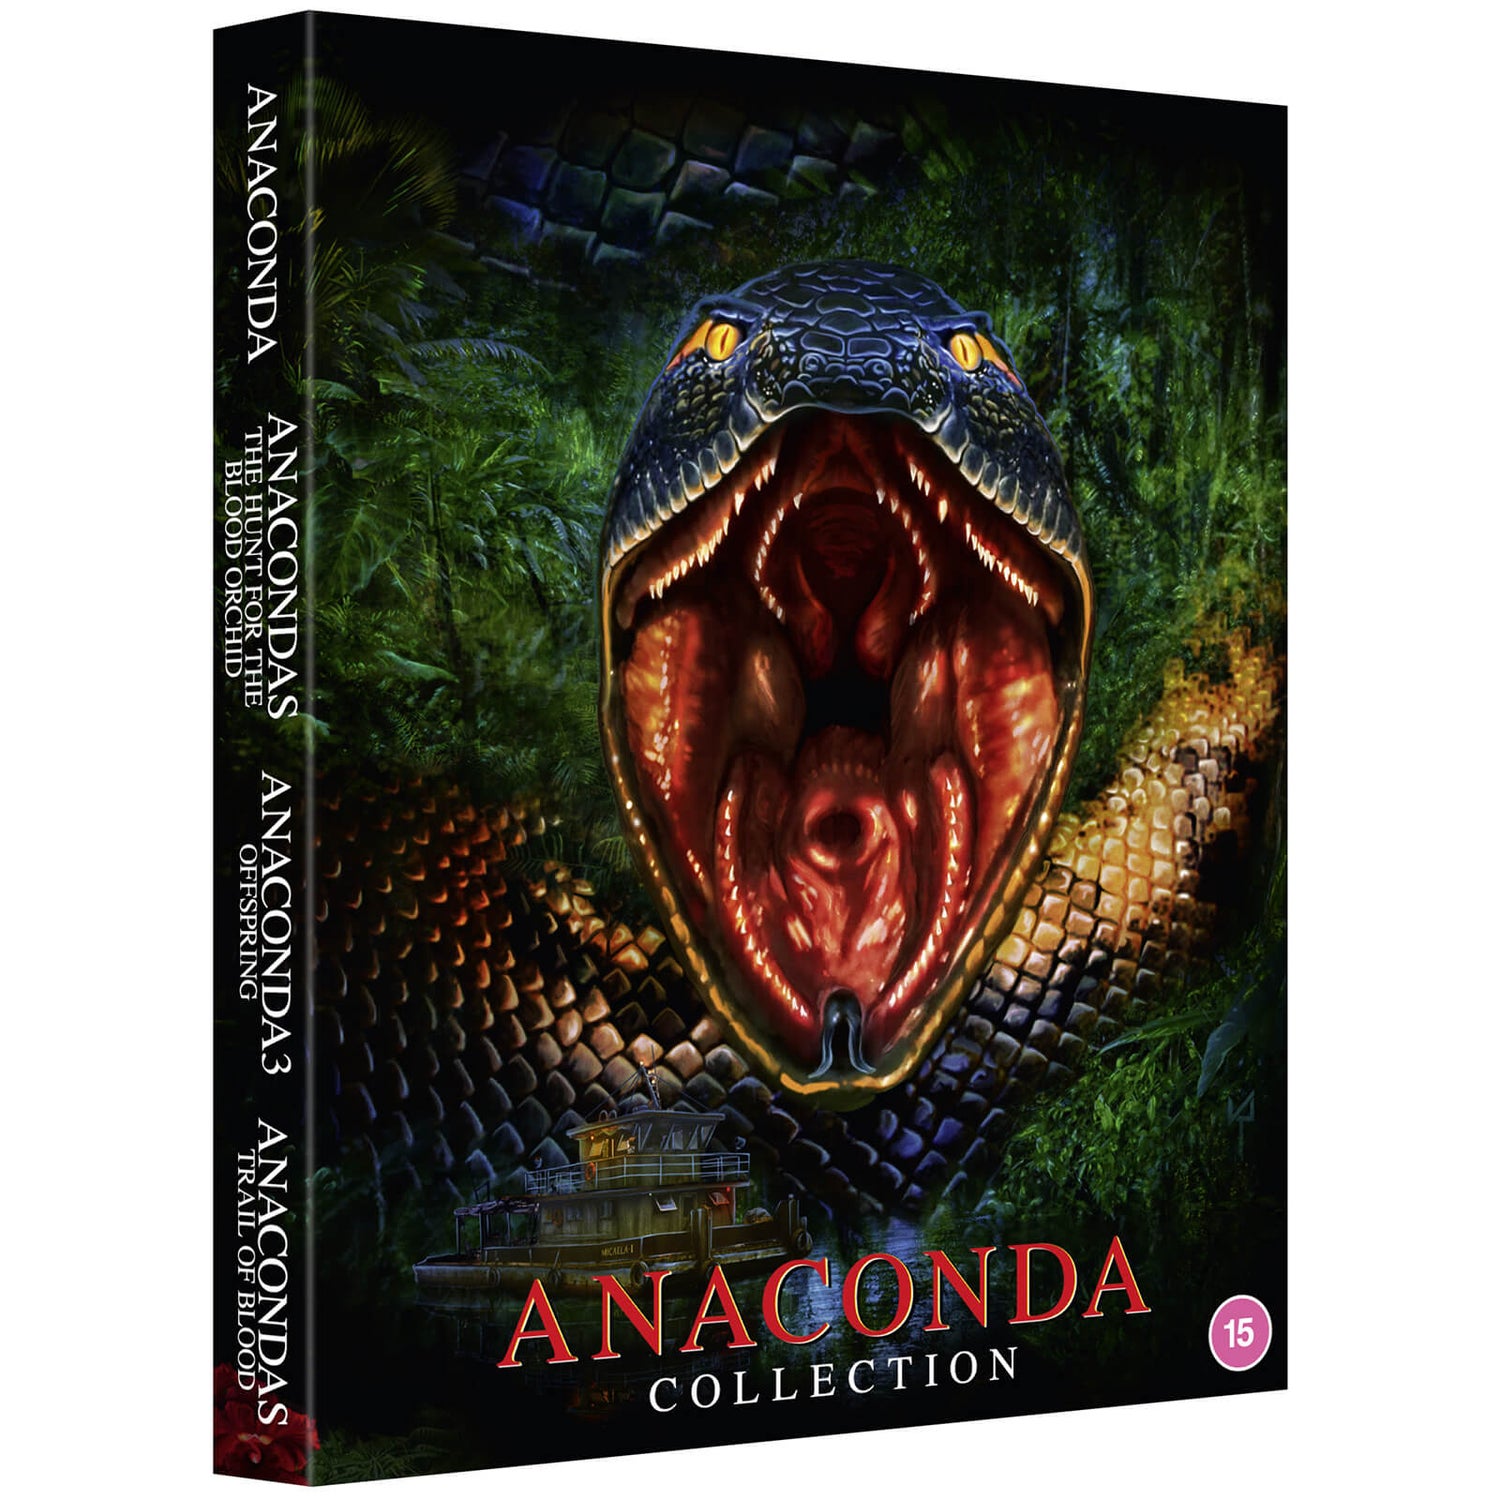 Anacondas Snake-I-O - Huge Slither Free Download